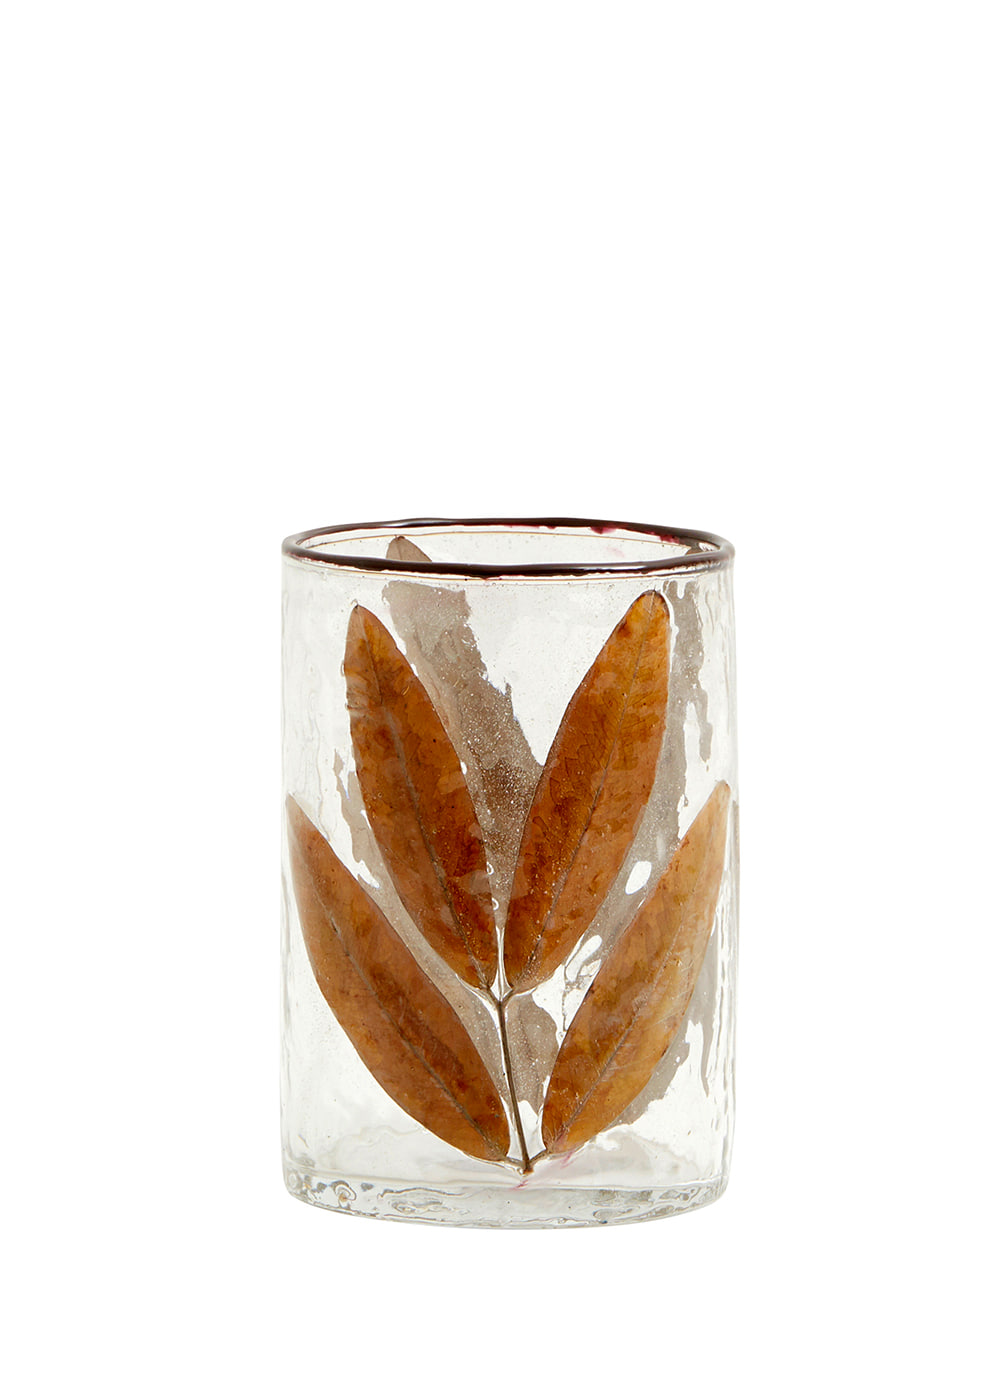 LEAVES, glass vase/t-light holder, S